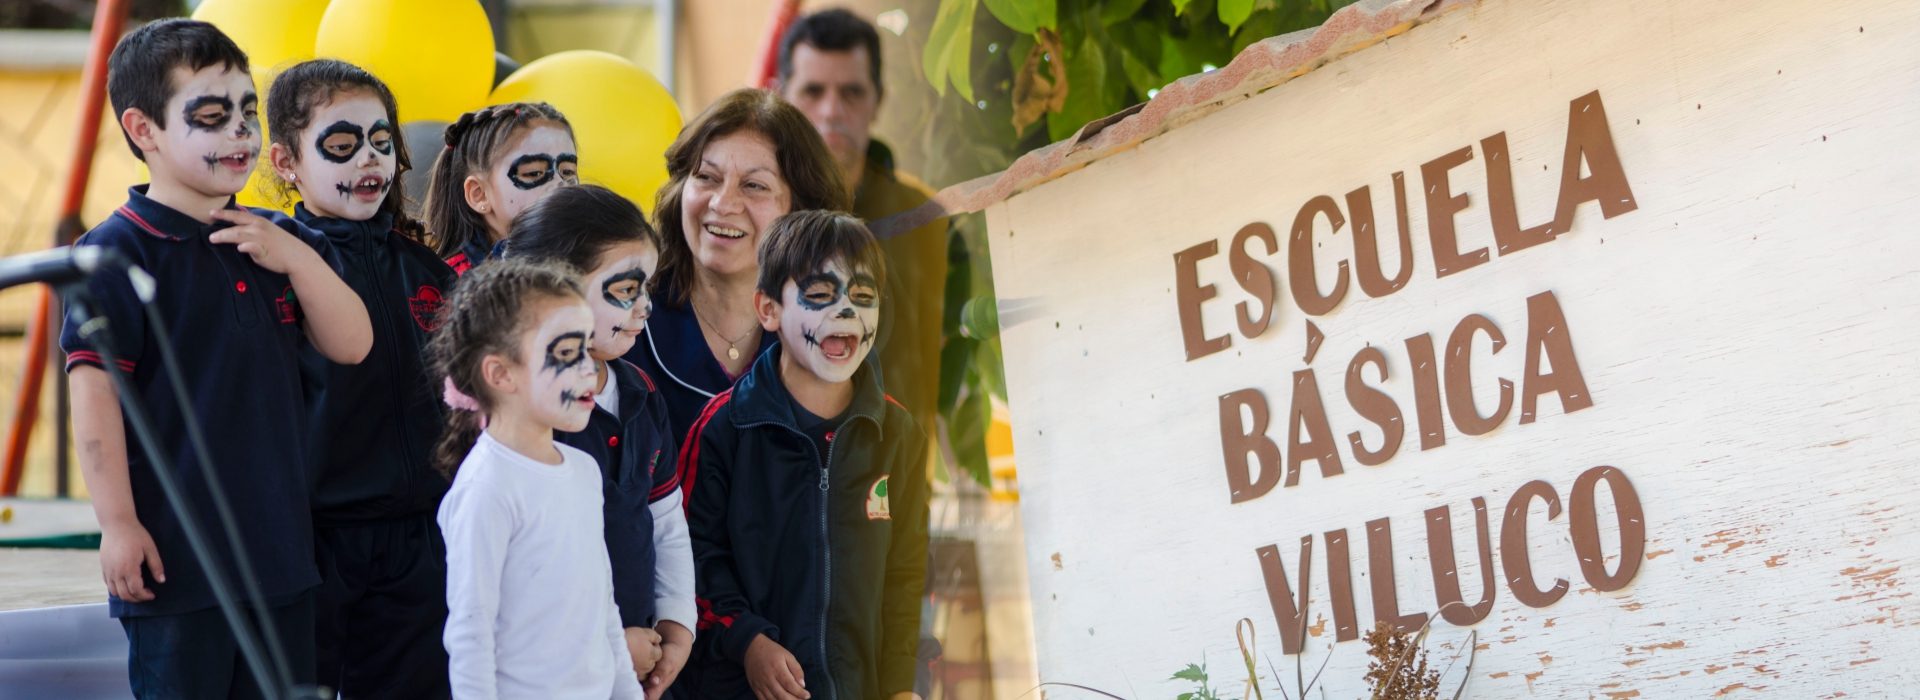 Banner Escuela Basica Viluco